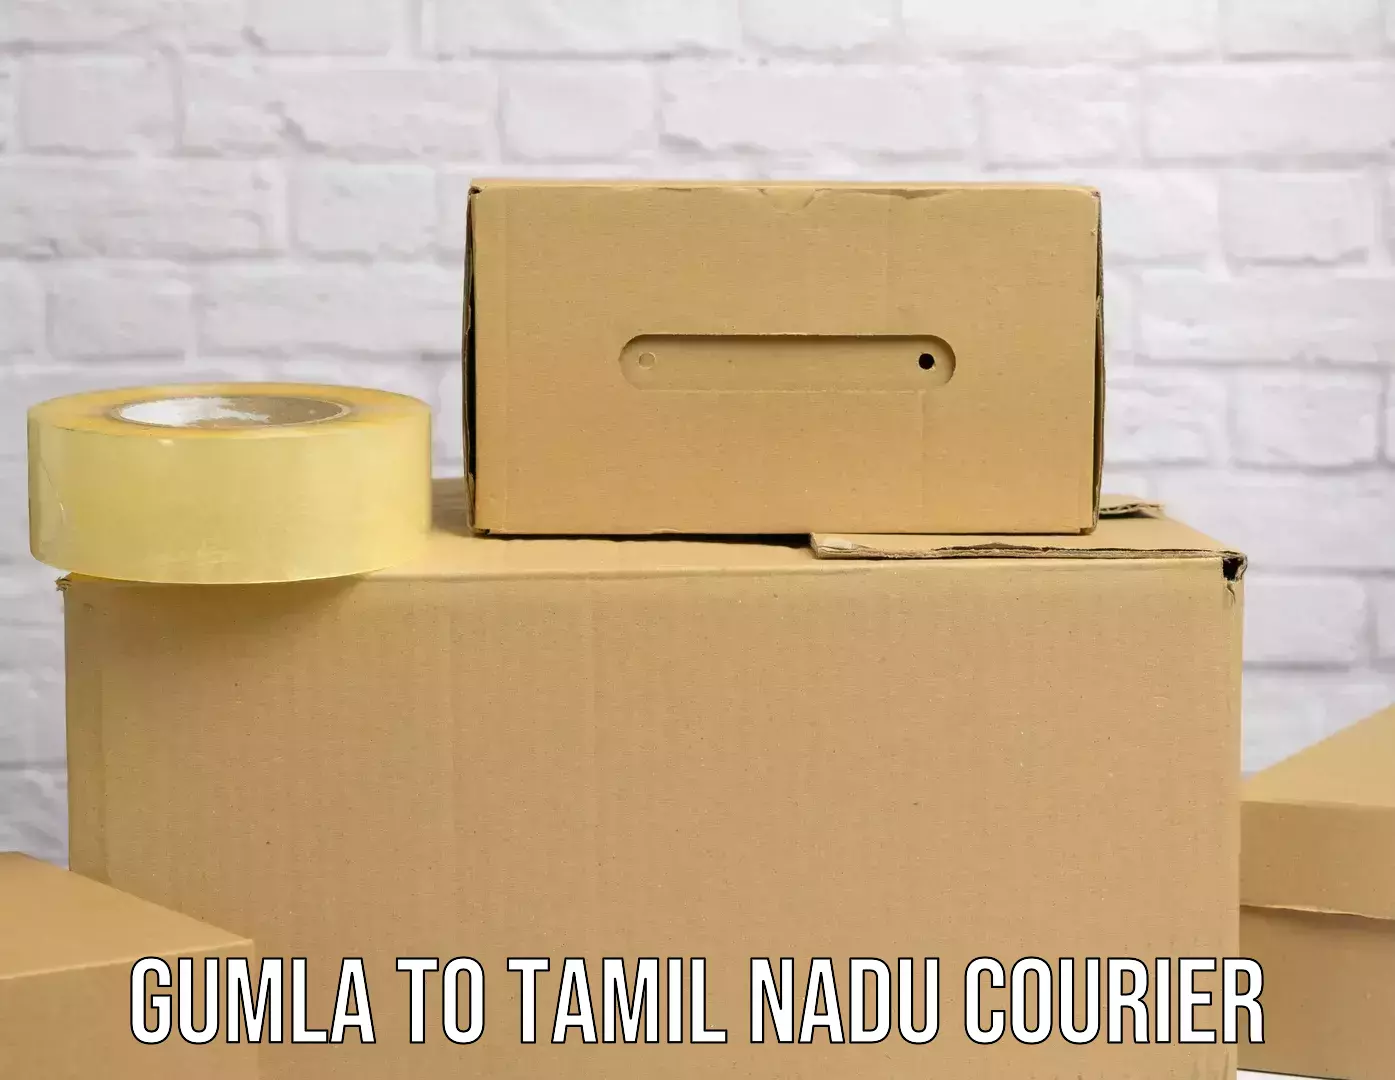 International courier rates Gumla to Cuddalore